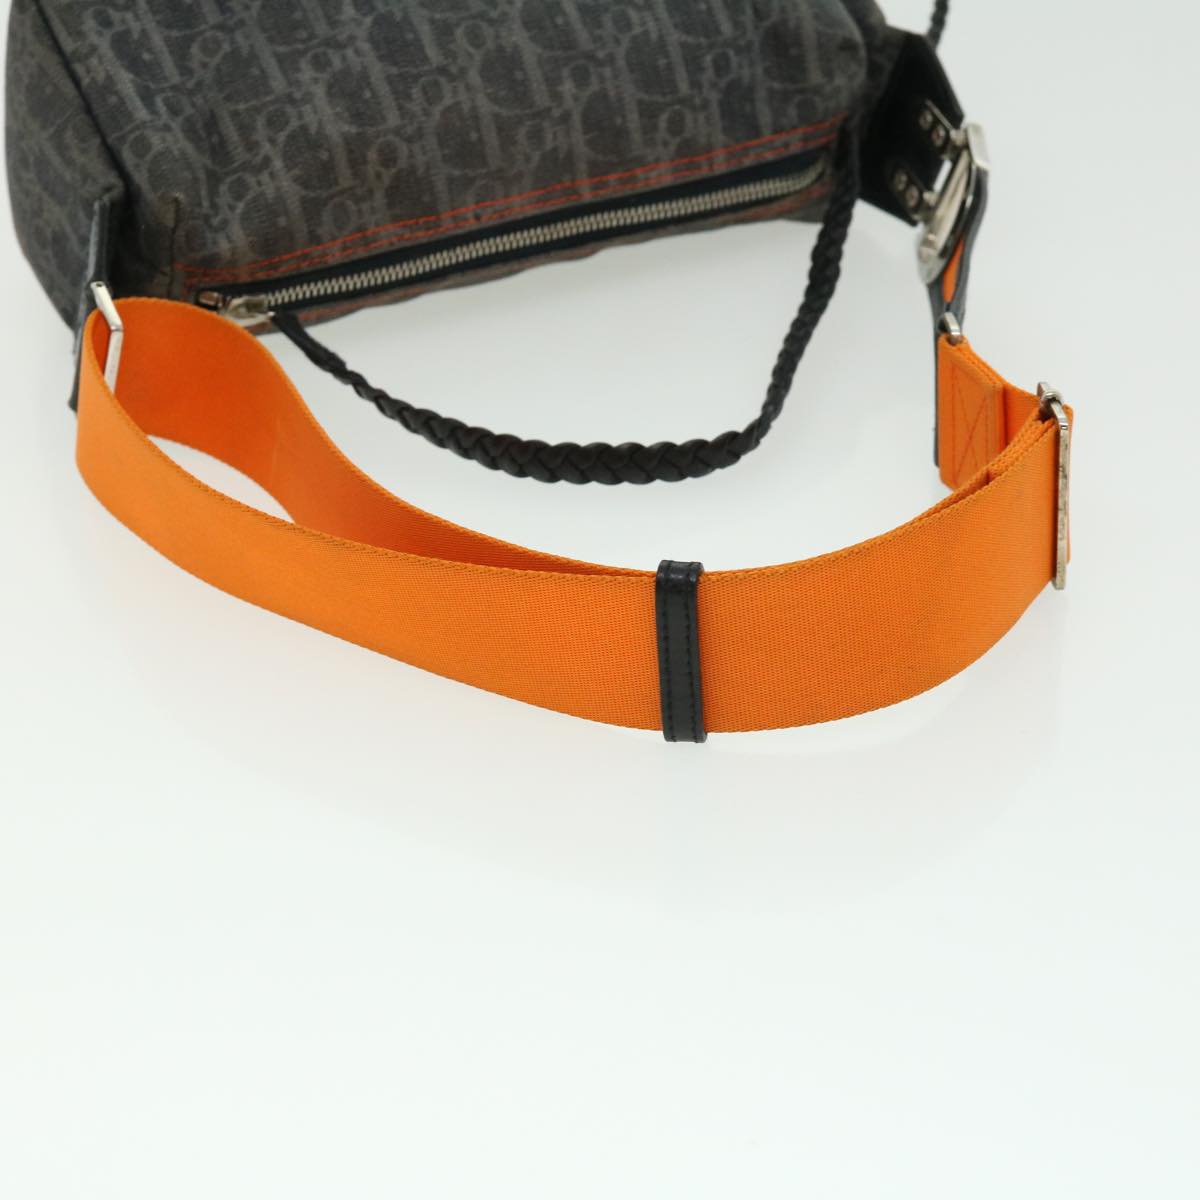 Christian Dior Flightline Trotter Canvas Shoulder Bag Gray Orange Auth 30556